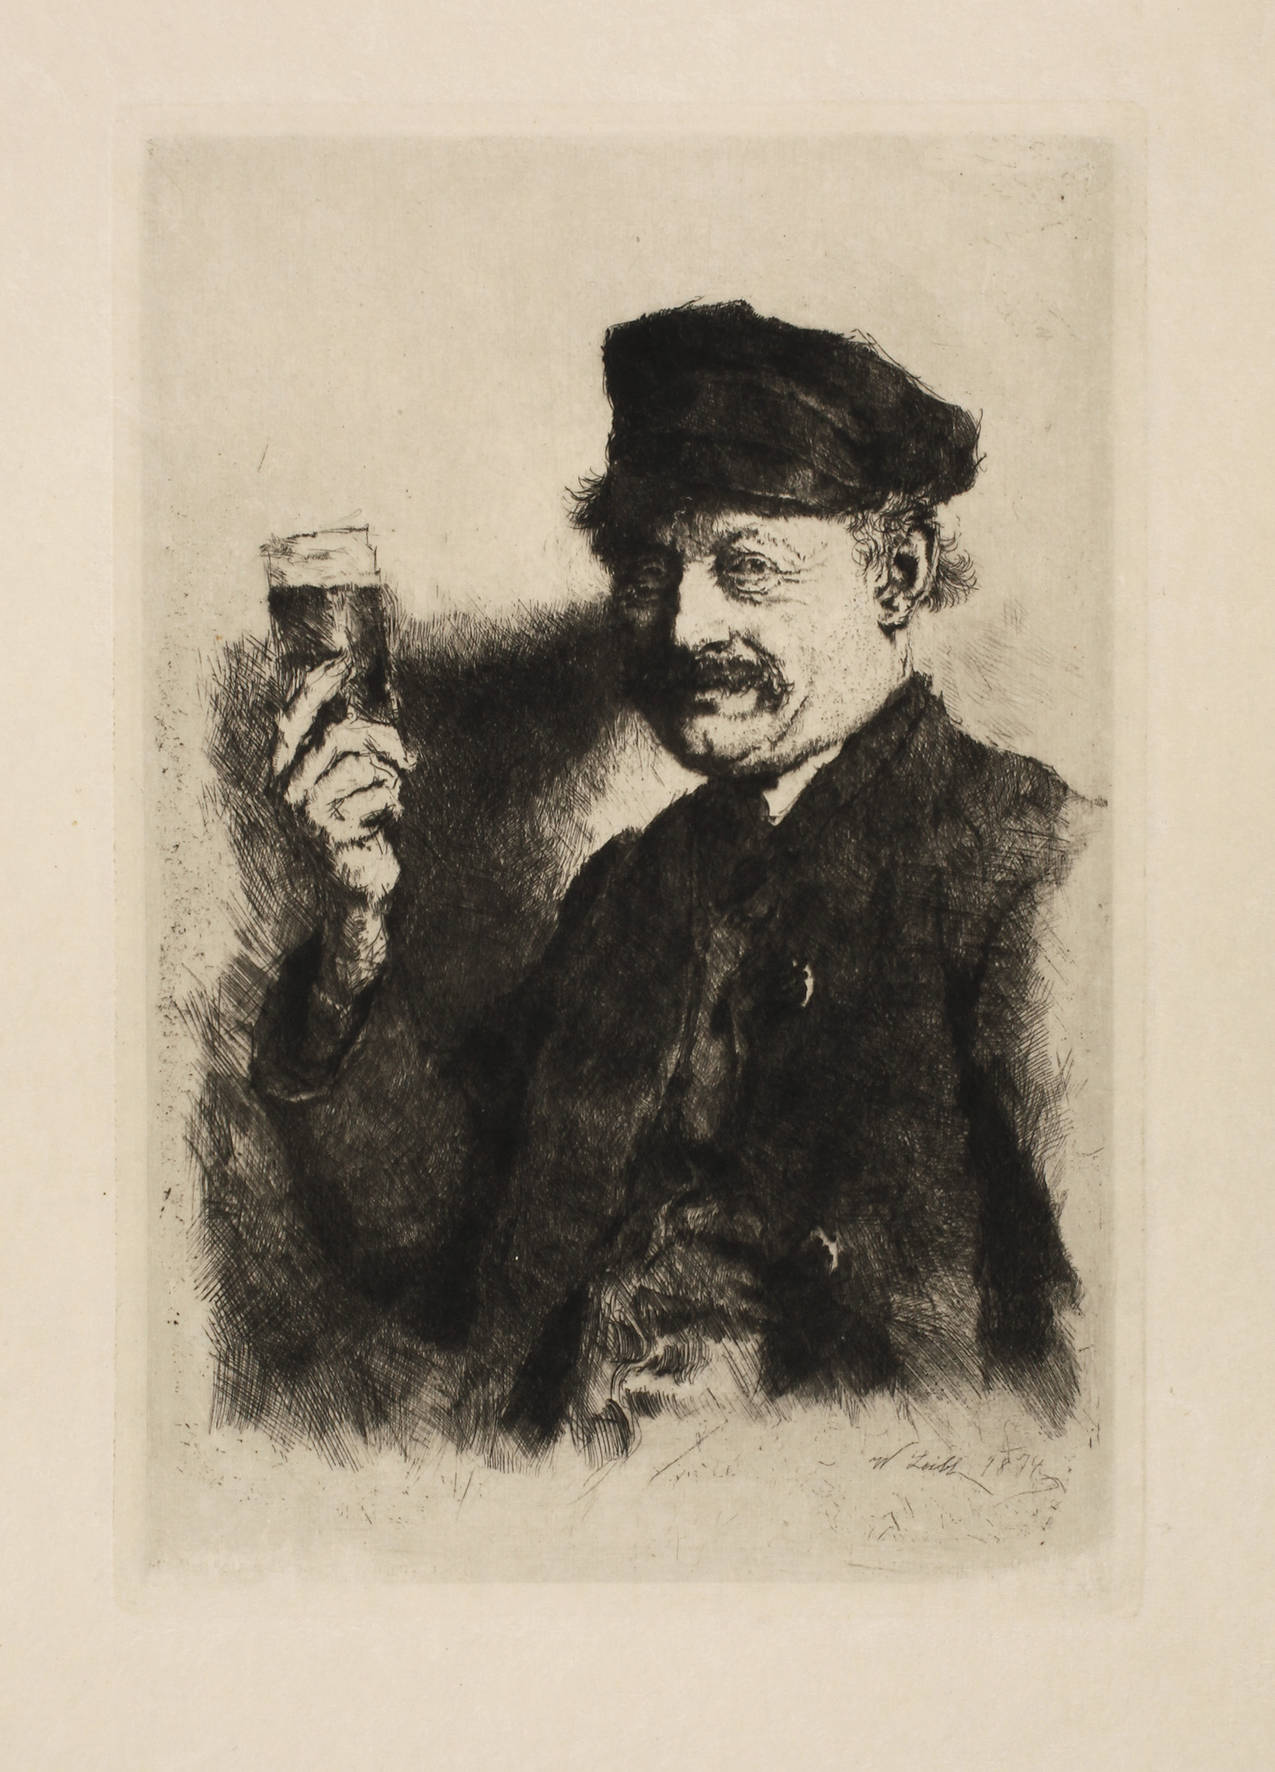 Prof. Wilhelm Leibl, ”Der Trinker”